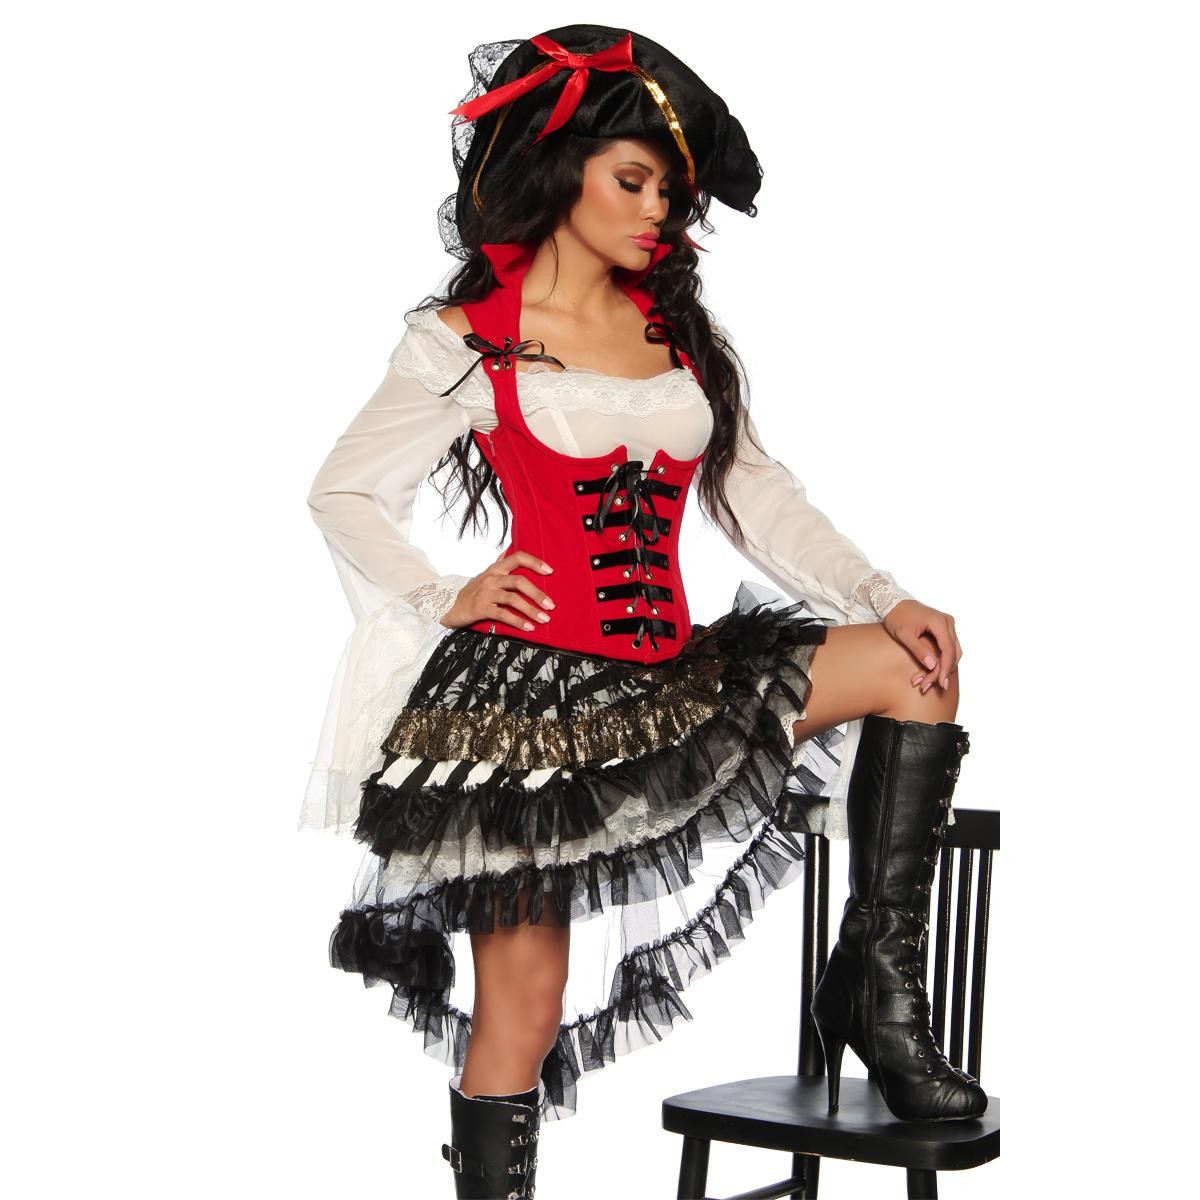  Piraten-Kostüm  -  rot/schwarz 